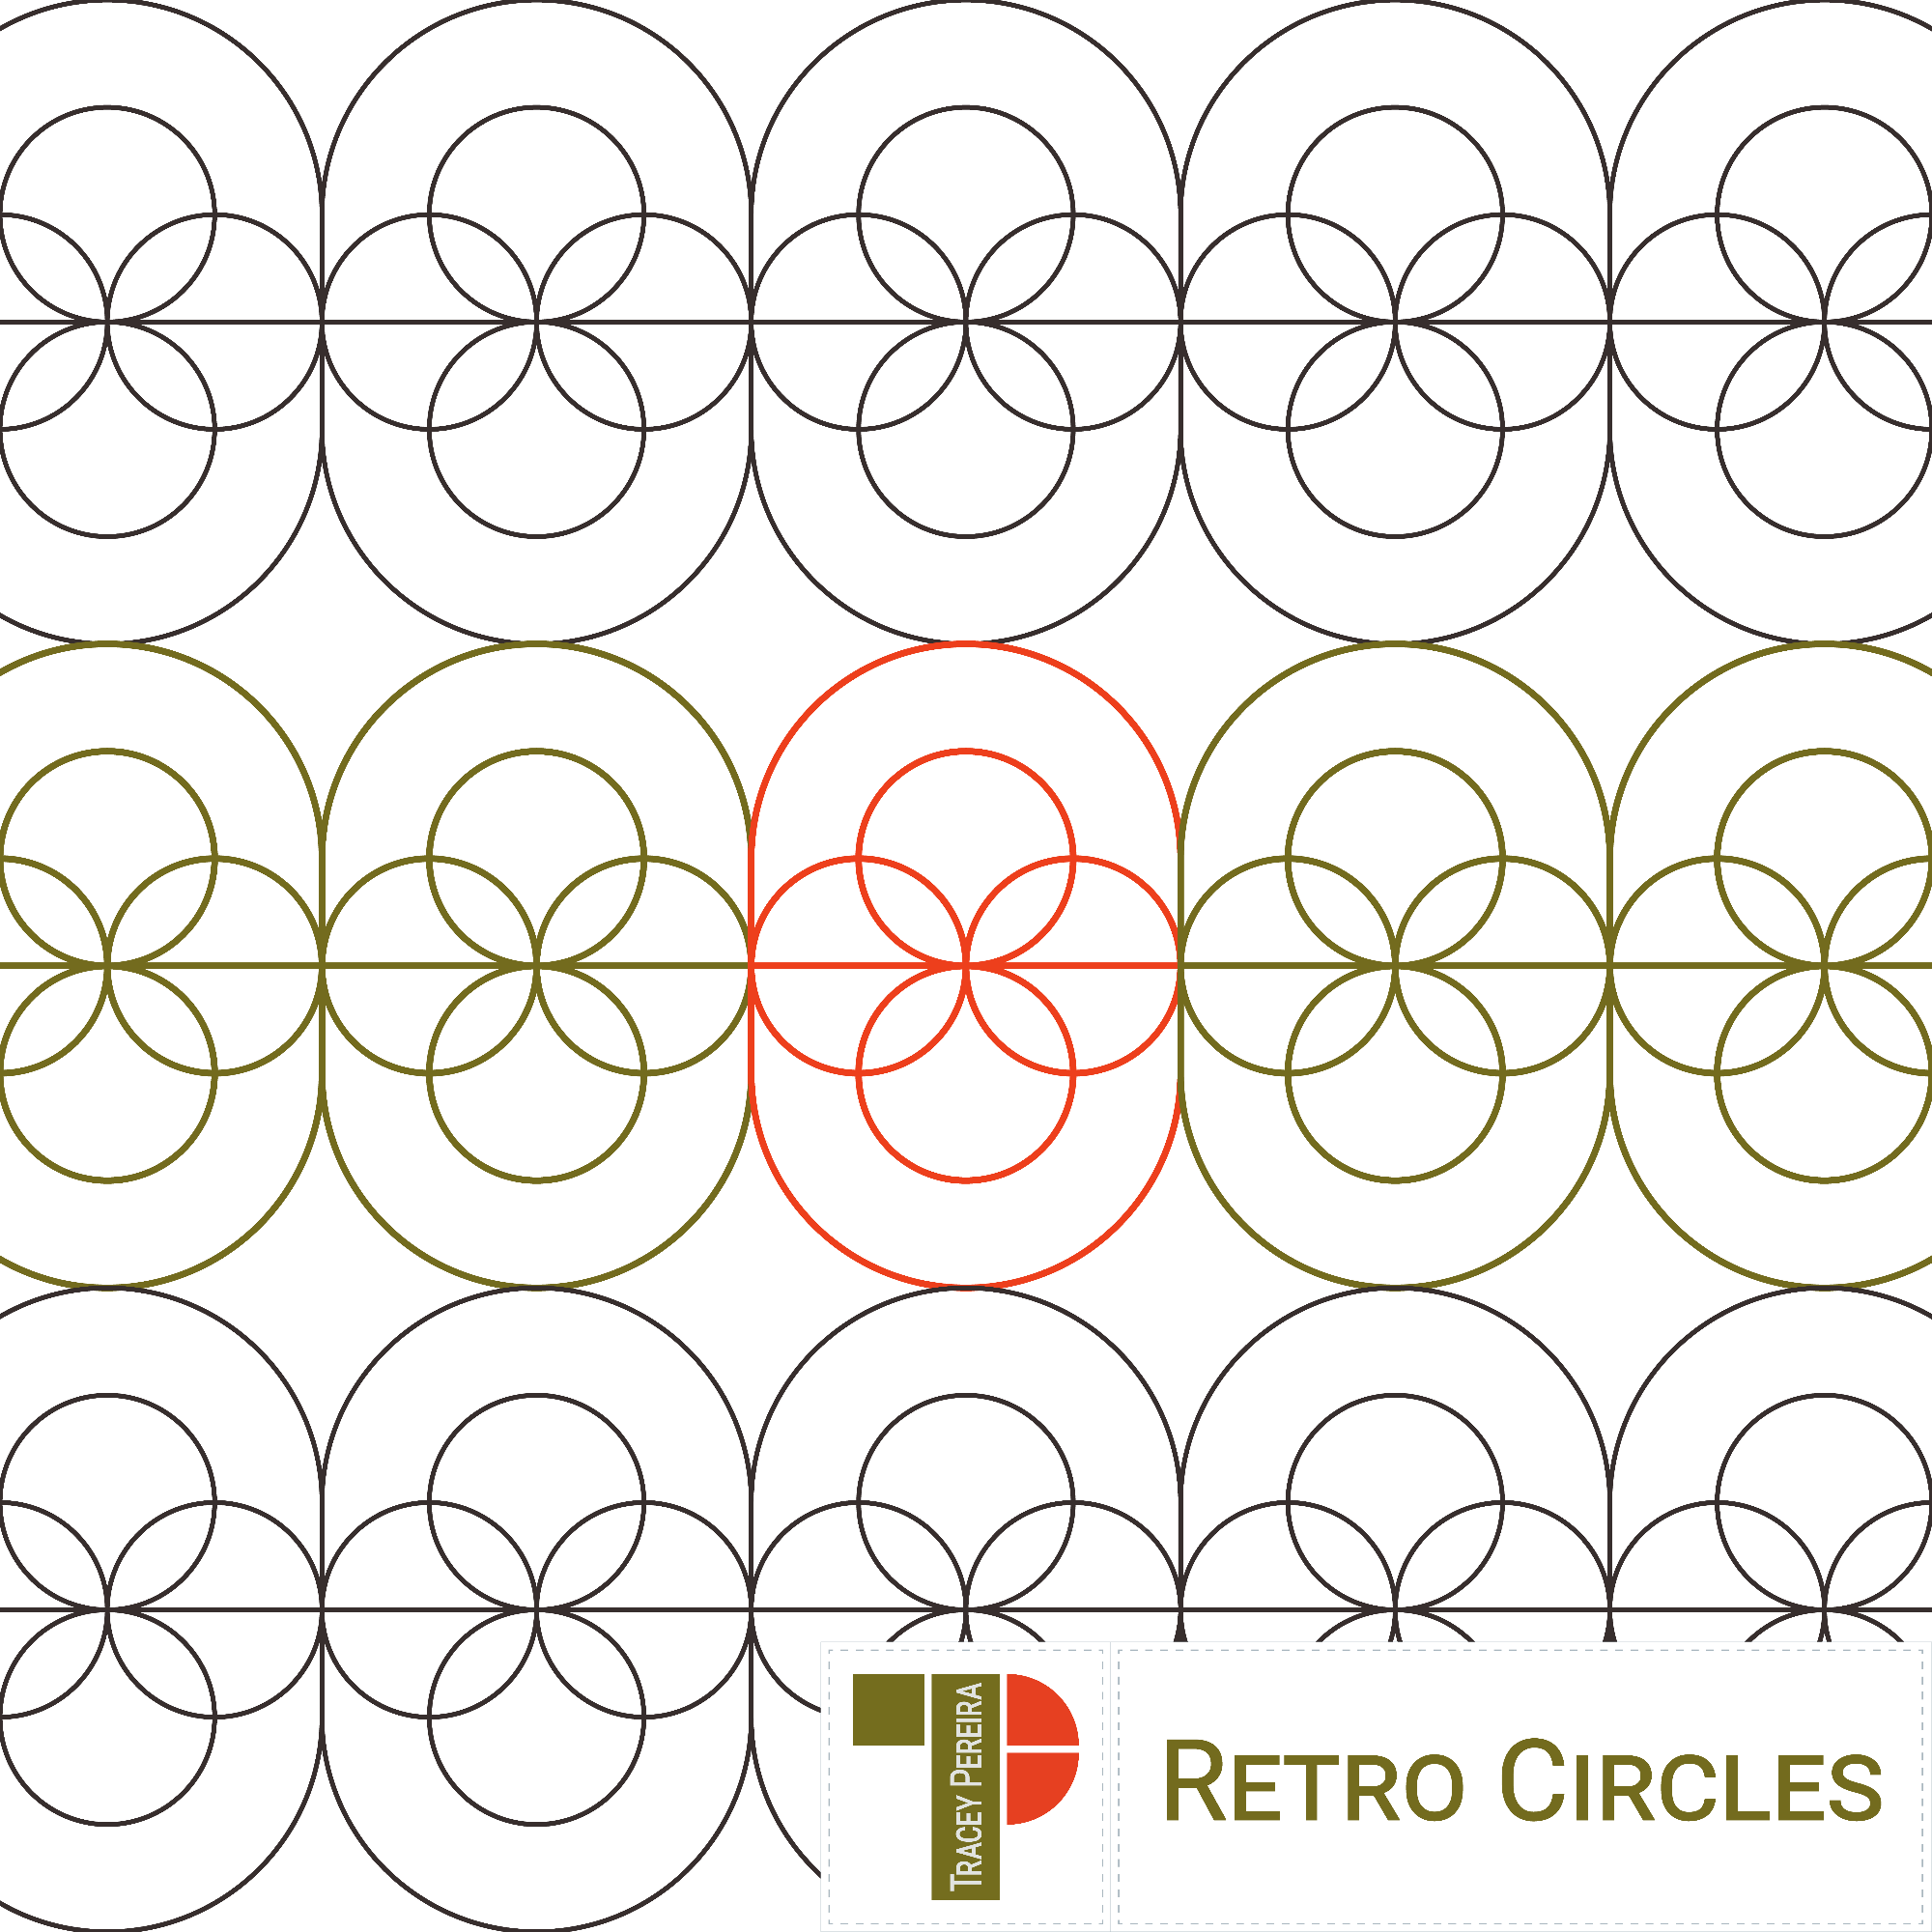 Retro Circles Layouts-01.png